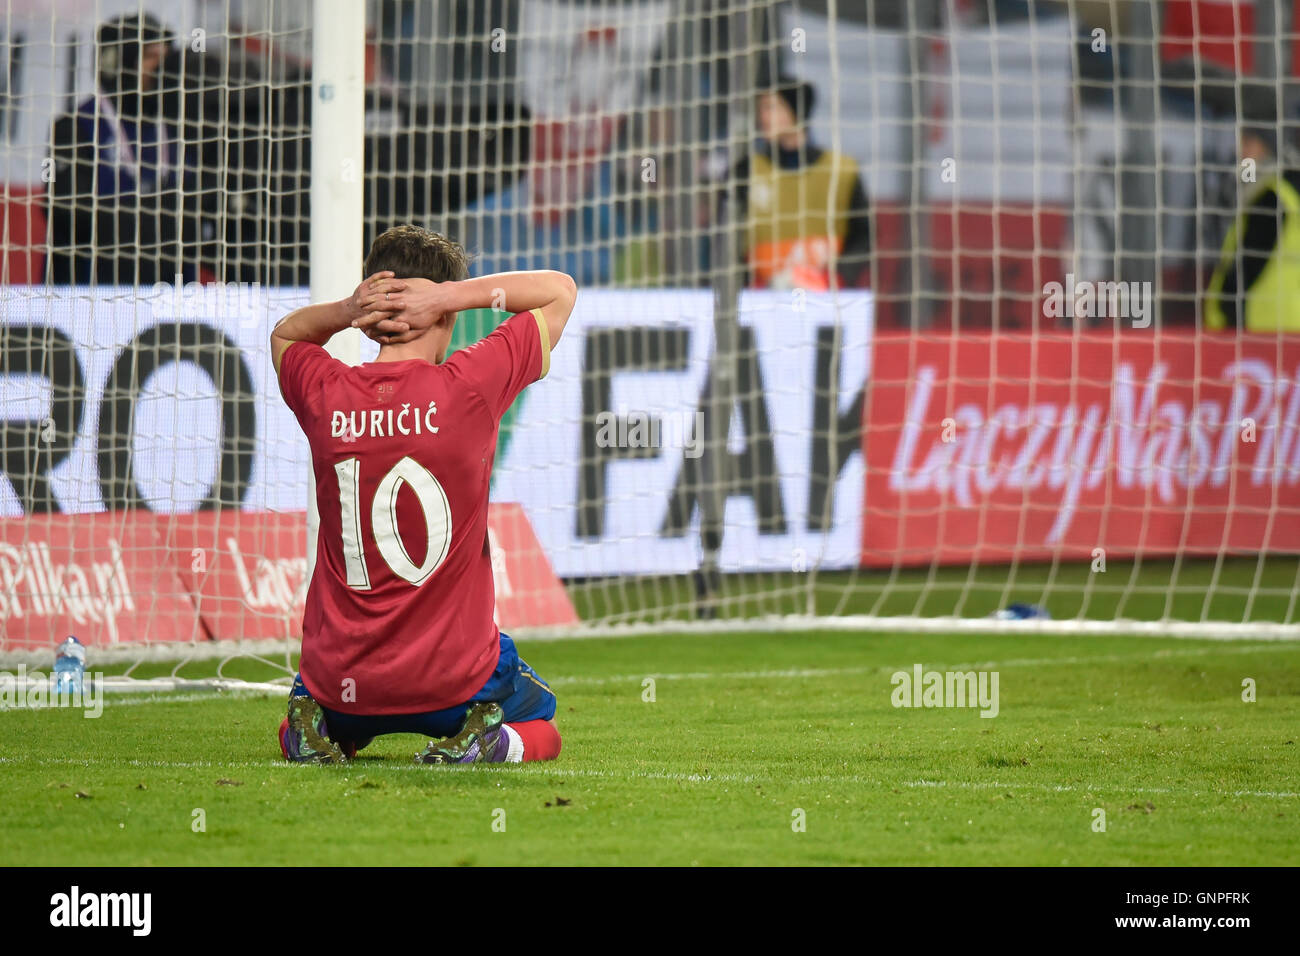 Posen, Polen - 23. März 2016: Filip Durcic in Aktion während internationaler Fußball Freundschaftsspiel Polen Vs Serbien 1:0. Stockfoto